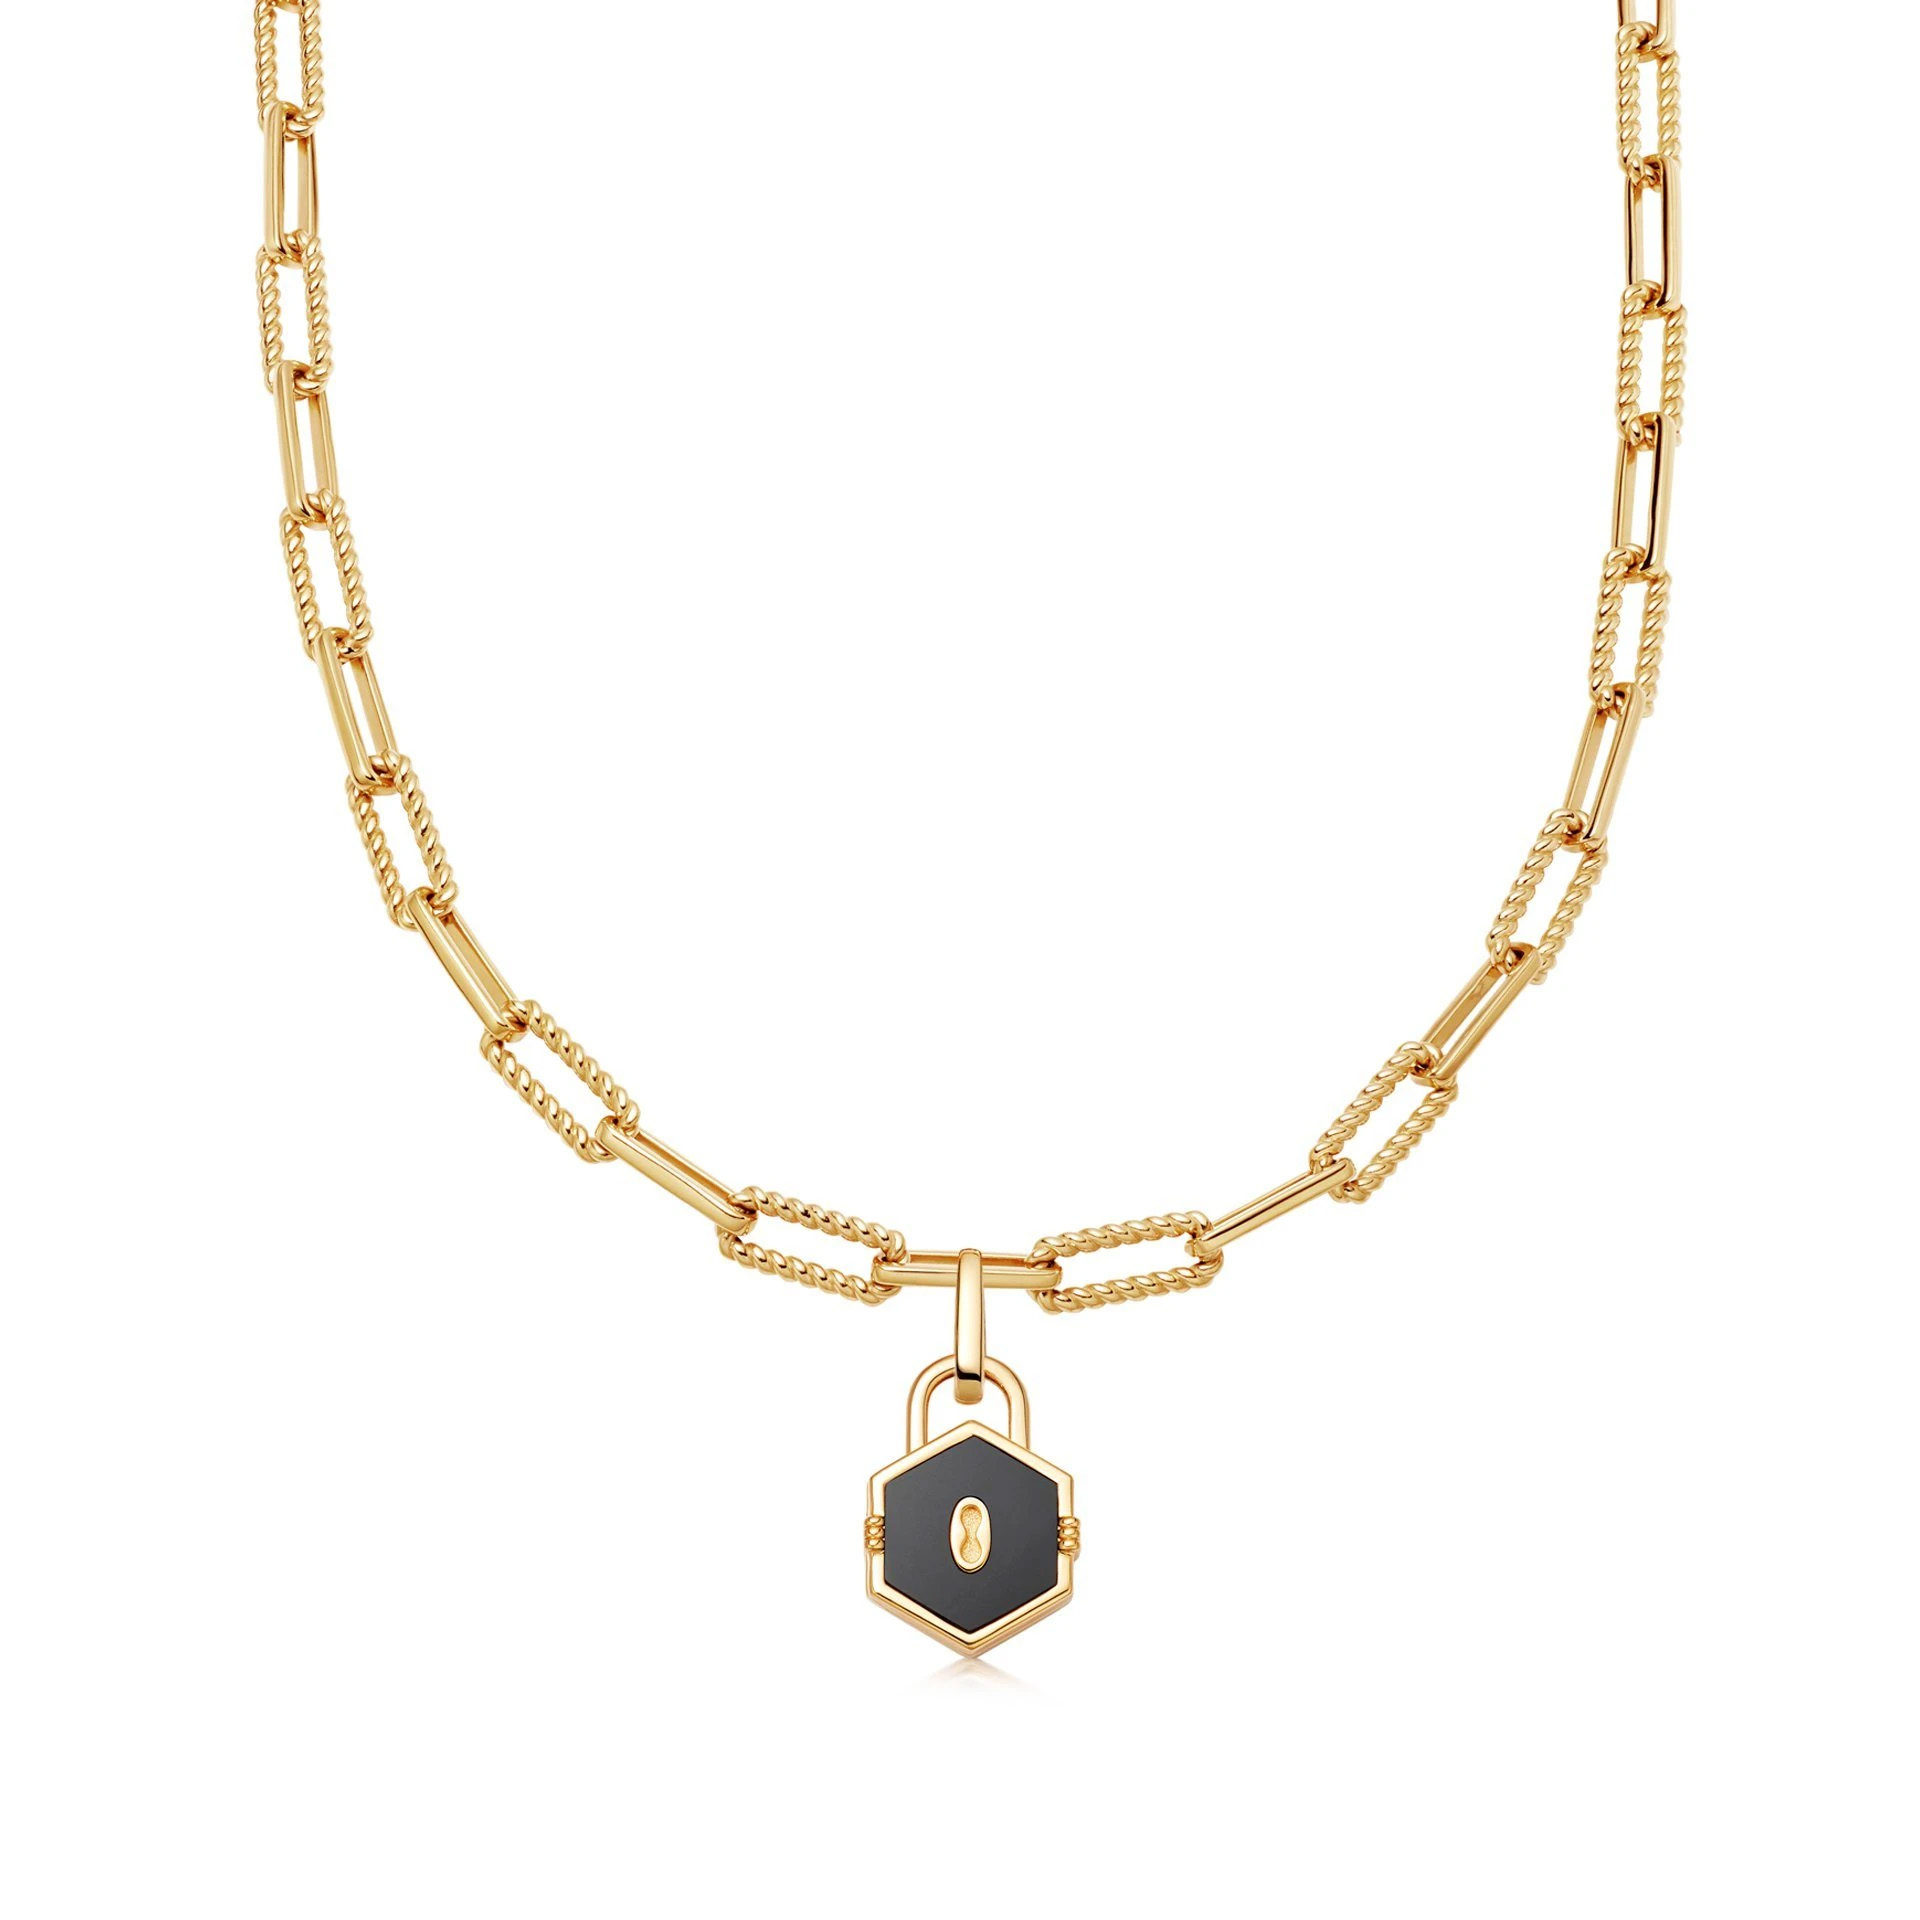 Оптовая продажа OEM кулон OEM/ODM ювелирные изделия ожерелье ювелирные изделия из 18-каратного золота с покрытием из стерлингового серебра 925 пробы